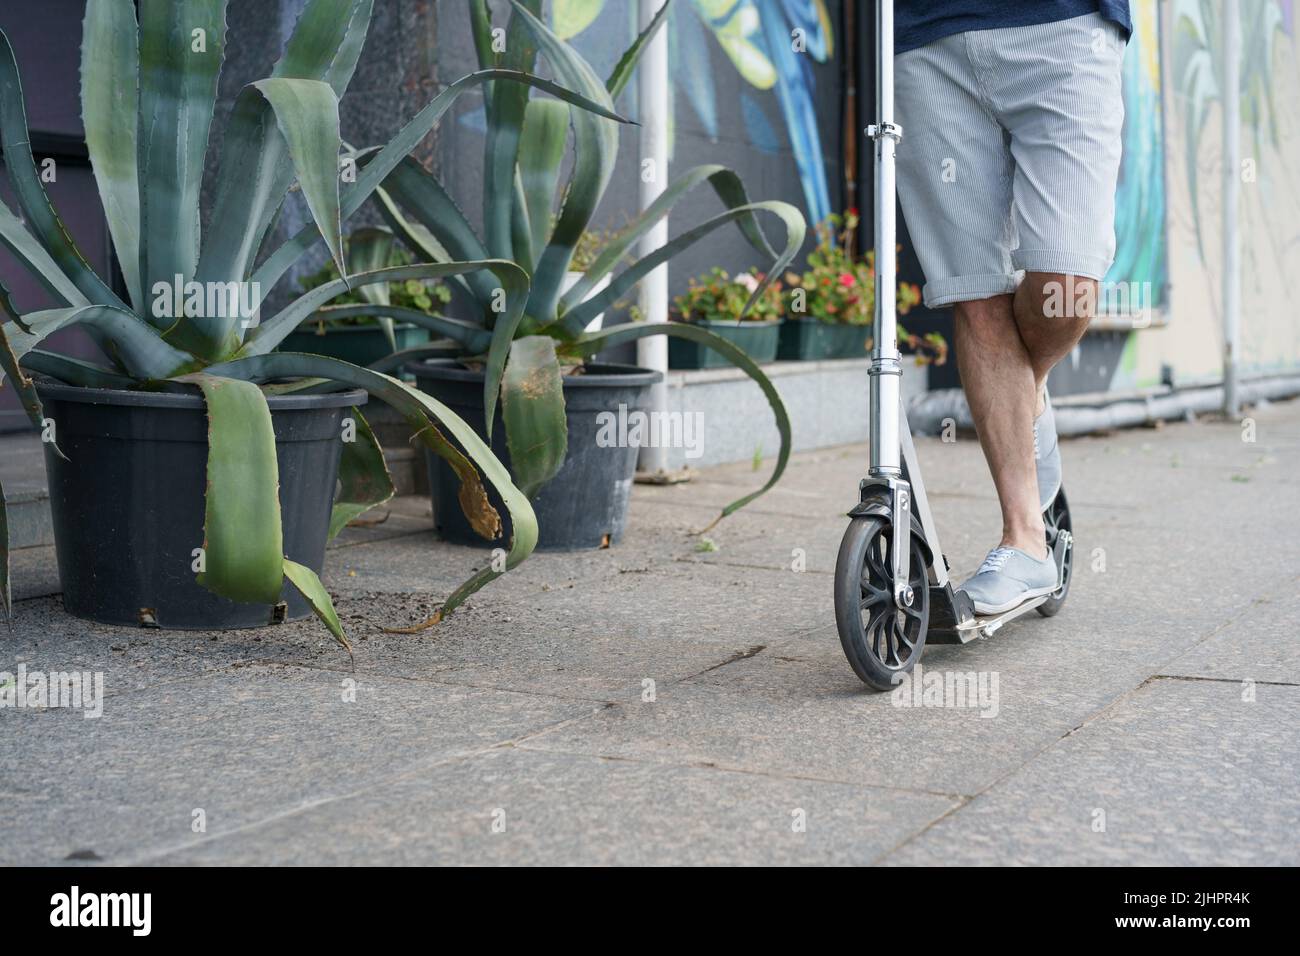 Nahaufnahme man Ride Scooter mit großen Rädern mit einer Fahrt auf der Straße oder Park nach der Arbeit im Freien mit Agavenpflanzen auf dem Hintergrund. Kein Gesicht sichtbar. Konzentrieren Sie sich auf das Vorderrad mit Griff. Stockfoto